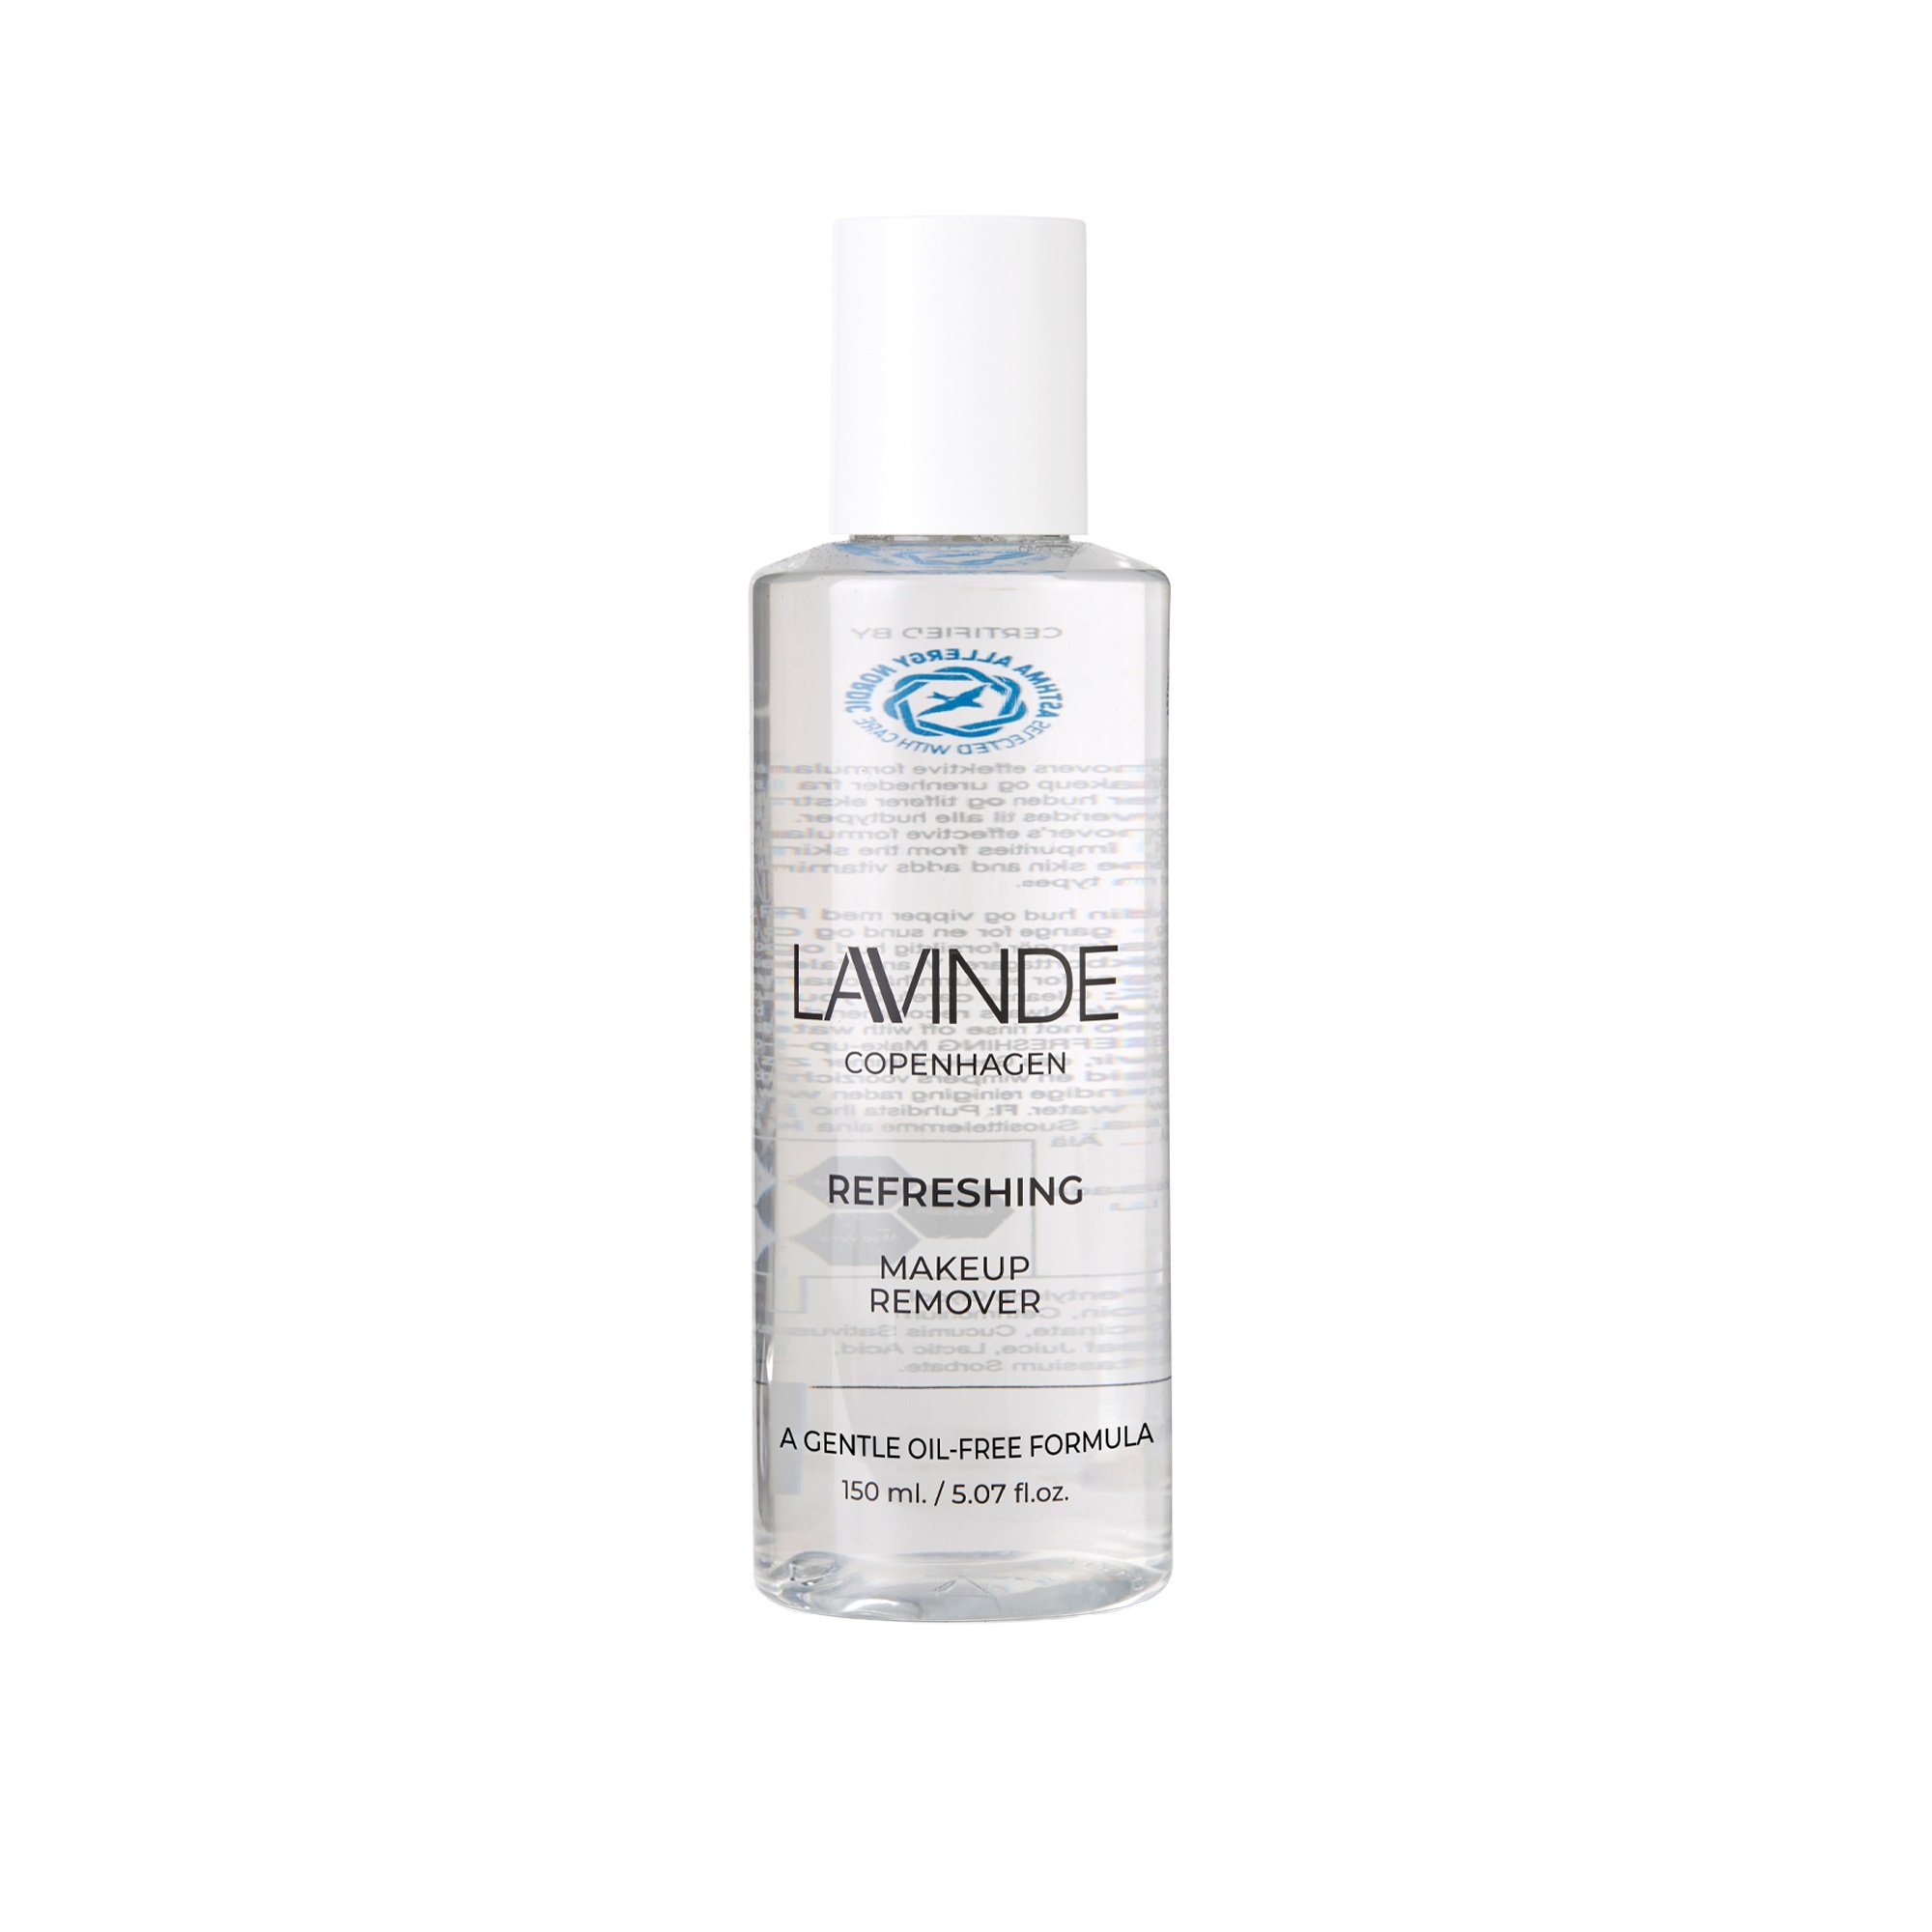 Lavinde Copenhagen - Refreshing Makeup Remover 150 ml - Skjønnhet